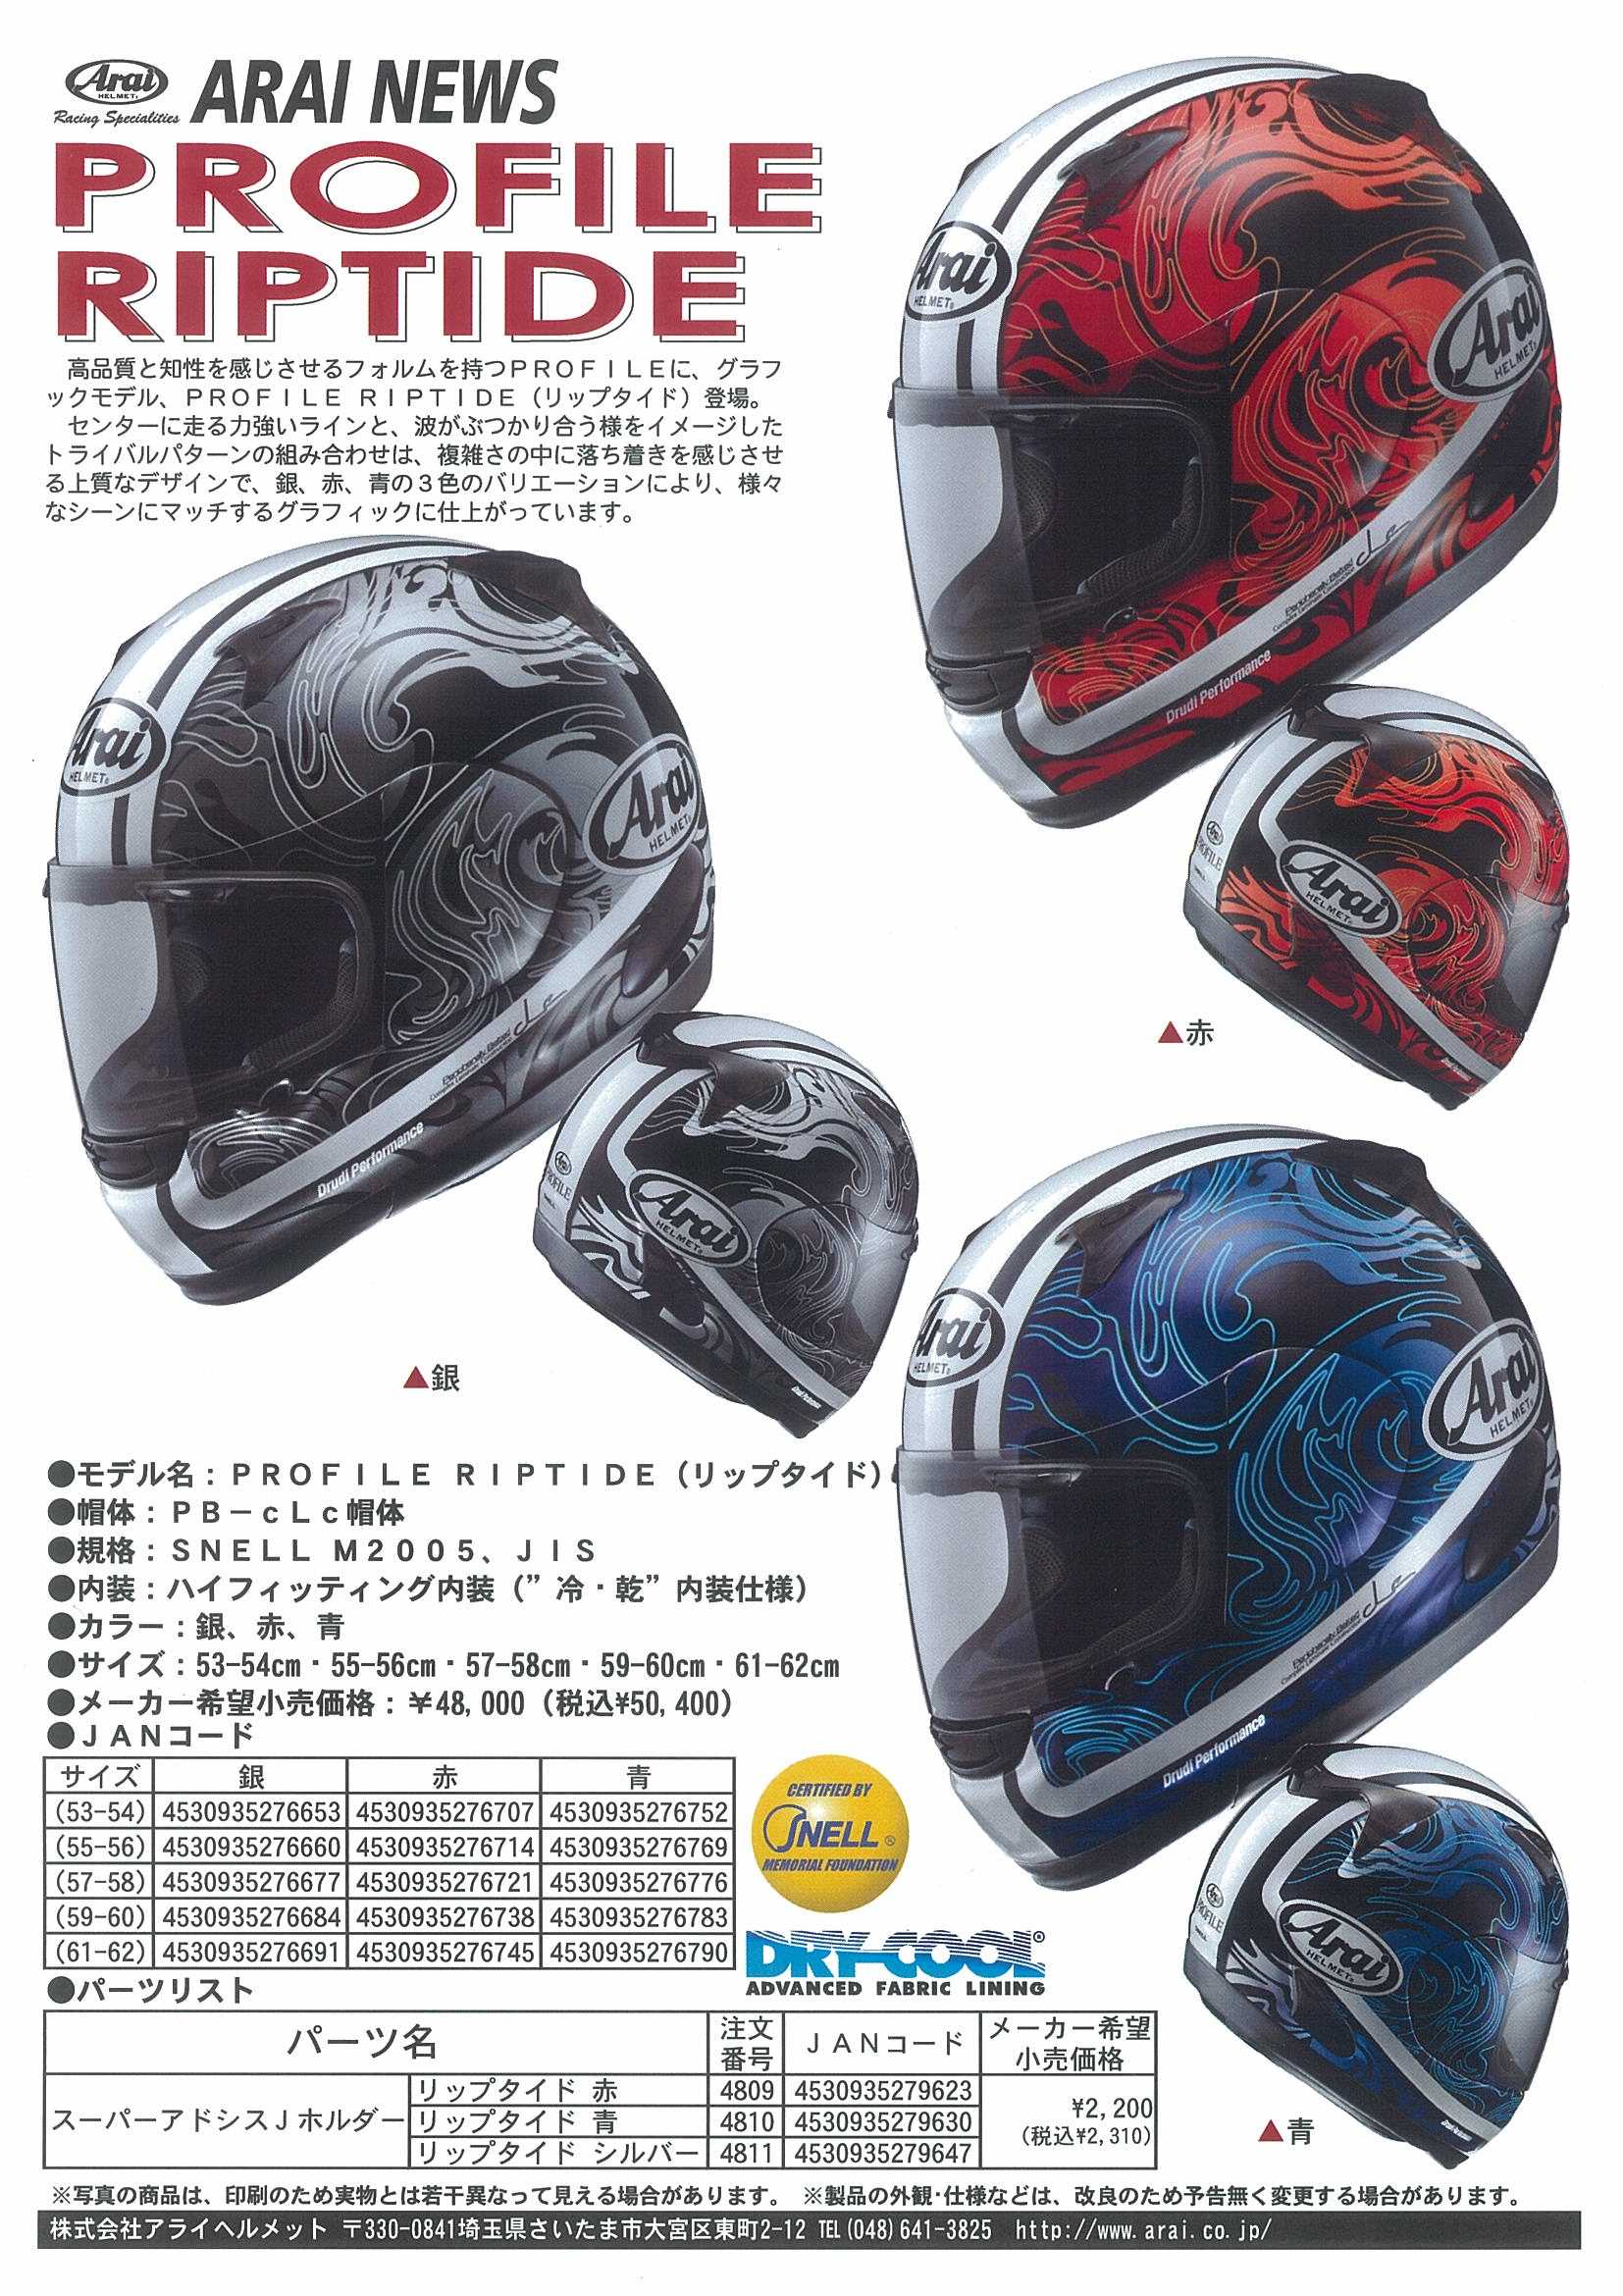 アライヘルメット新製品 : 株式会社ゴーダ